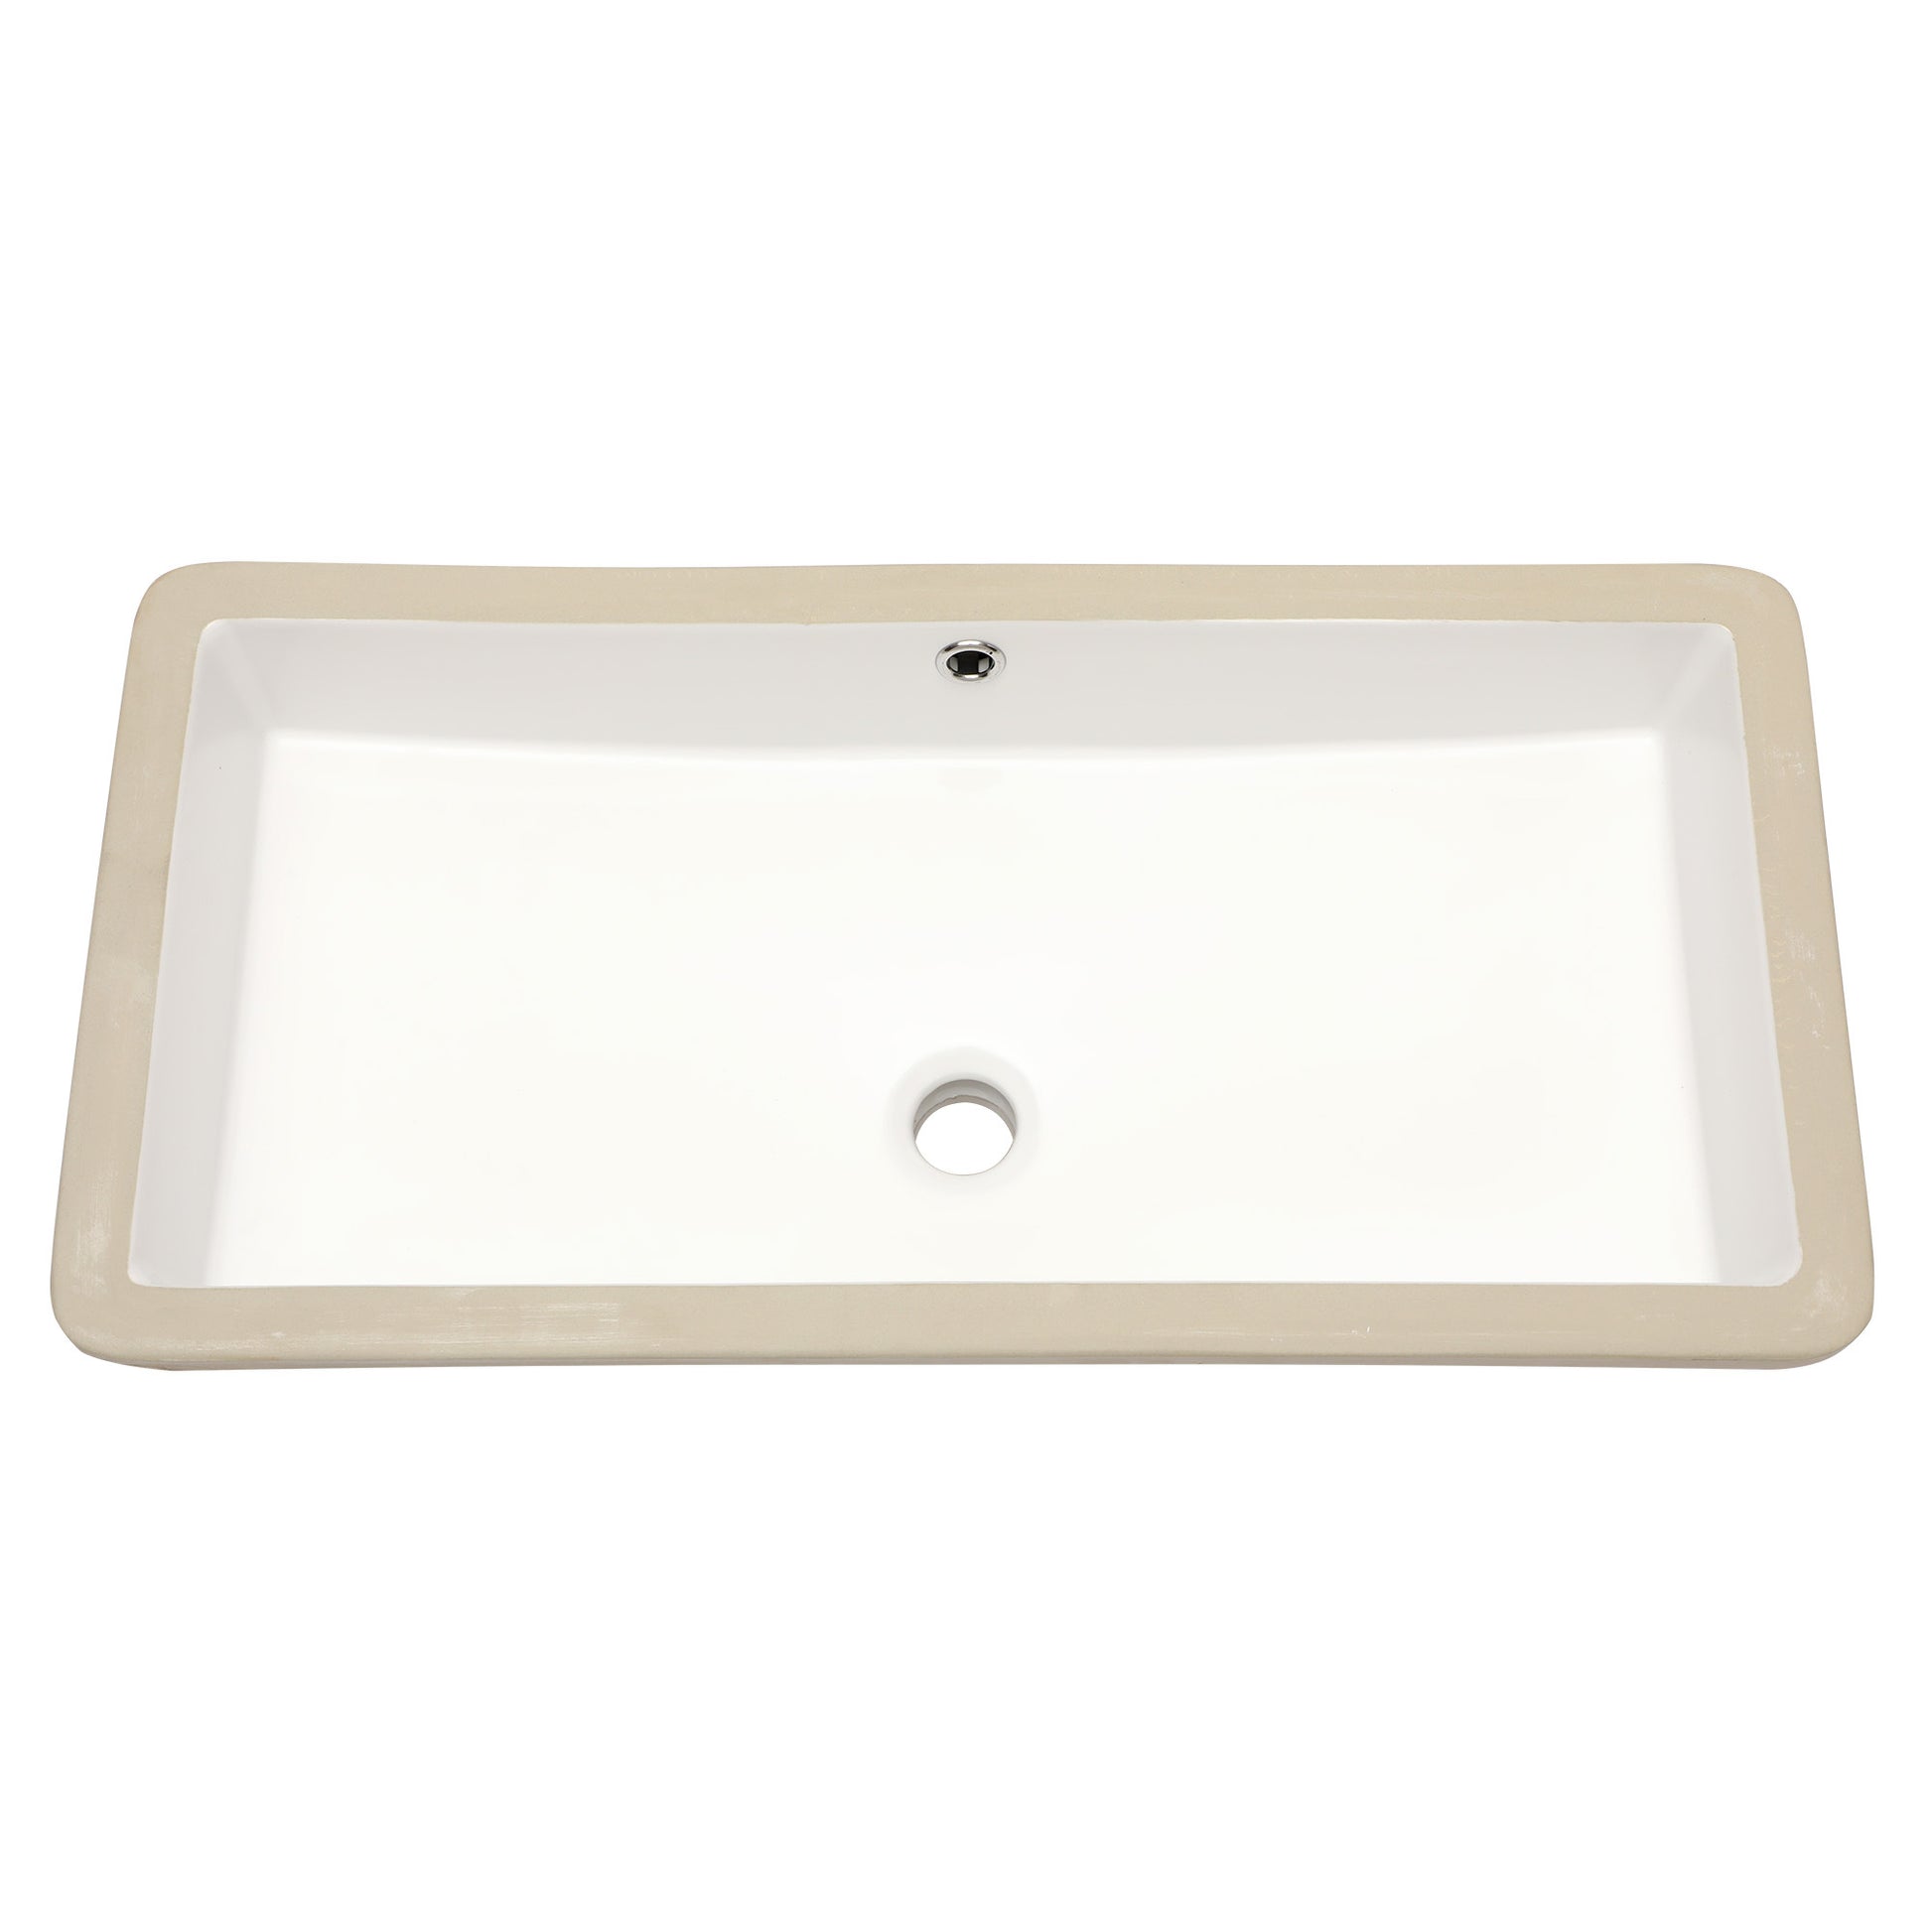 28"x14" White Ceramic Rectangular Undermount Bathroom white-ceramic